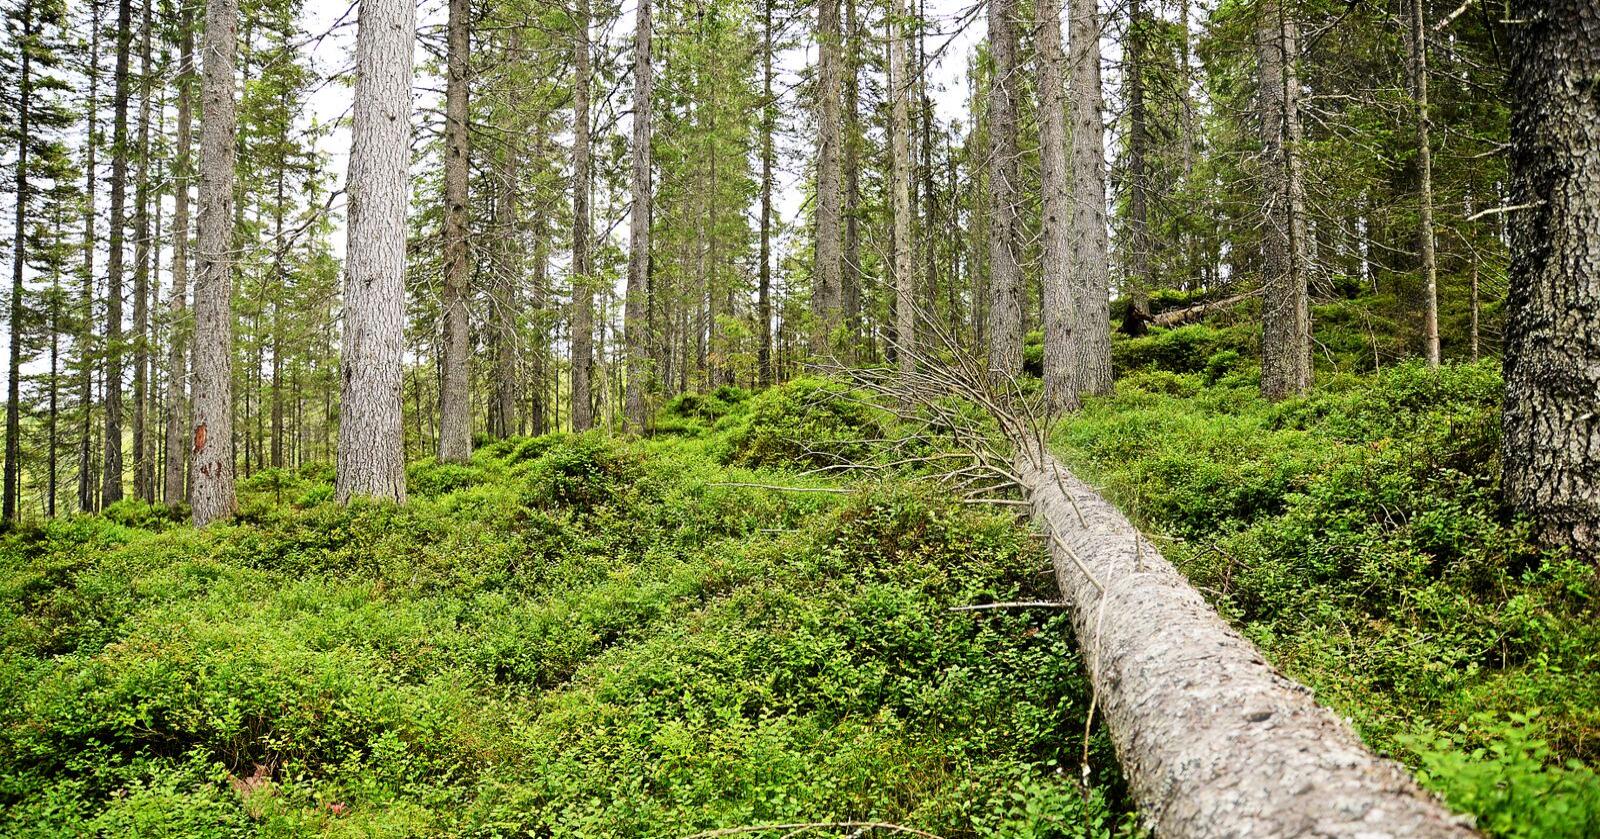 Skoger i lavlandet i Sør-Norge vil prioriteres i skogvernet fremover. Foto: Siri Juell Ramussen